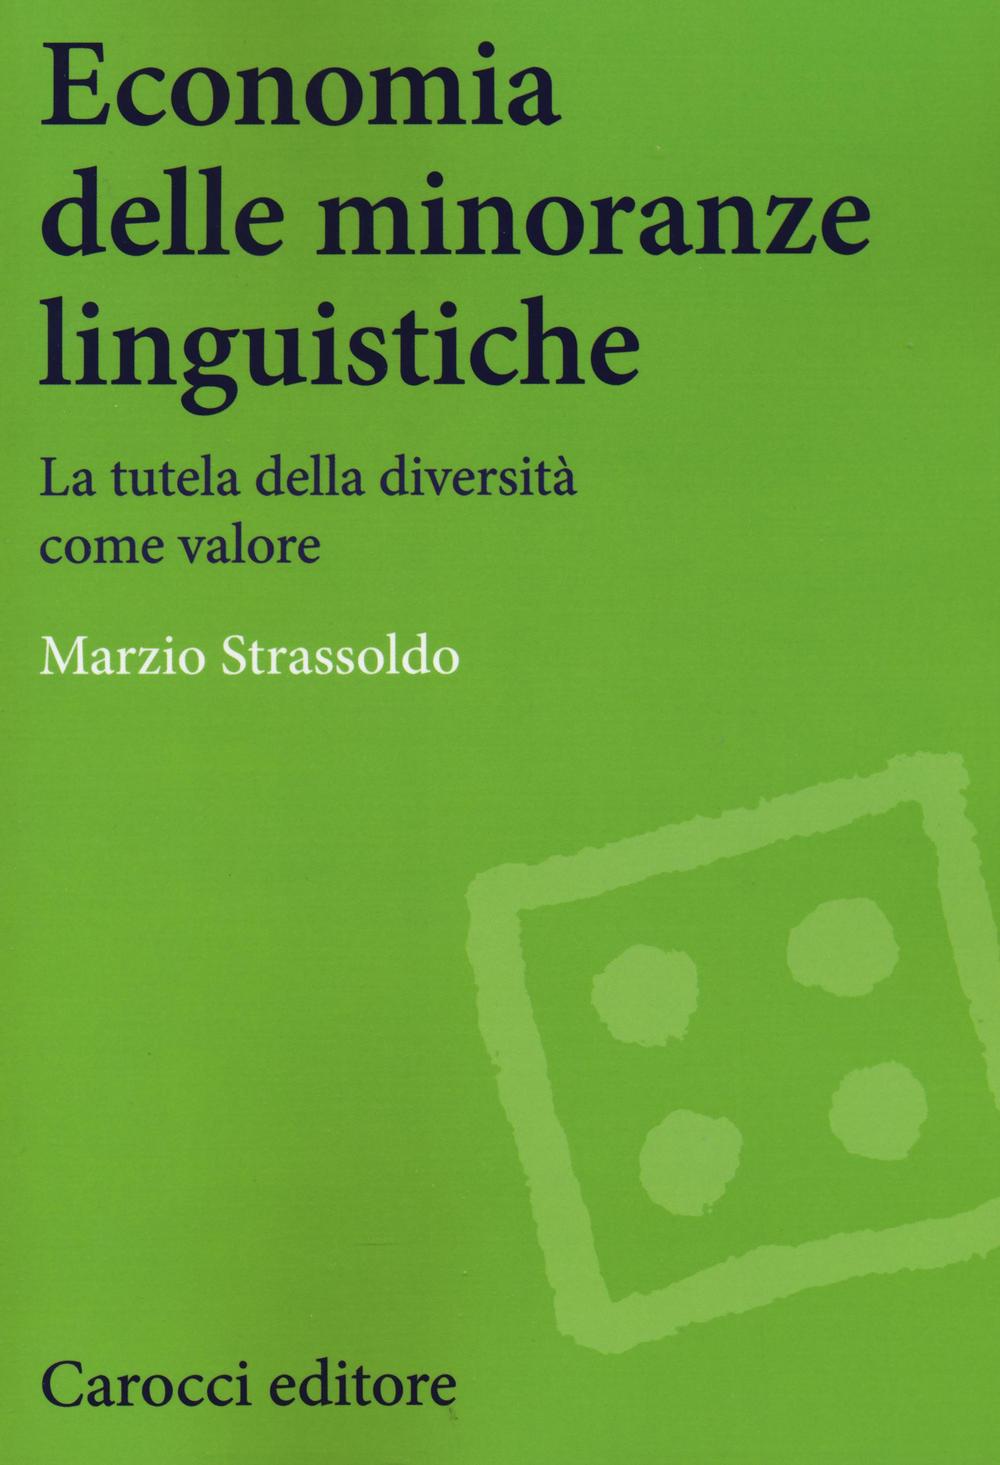 Kniha Economia delle minoranze linguistiche. La tutela delle diversità come valore Marzio Strassoldo